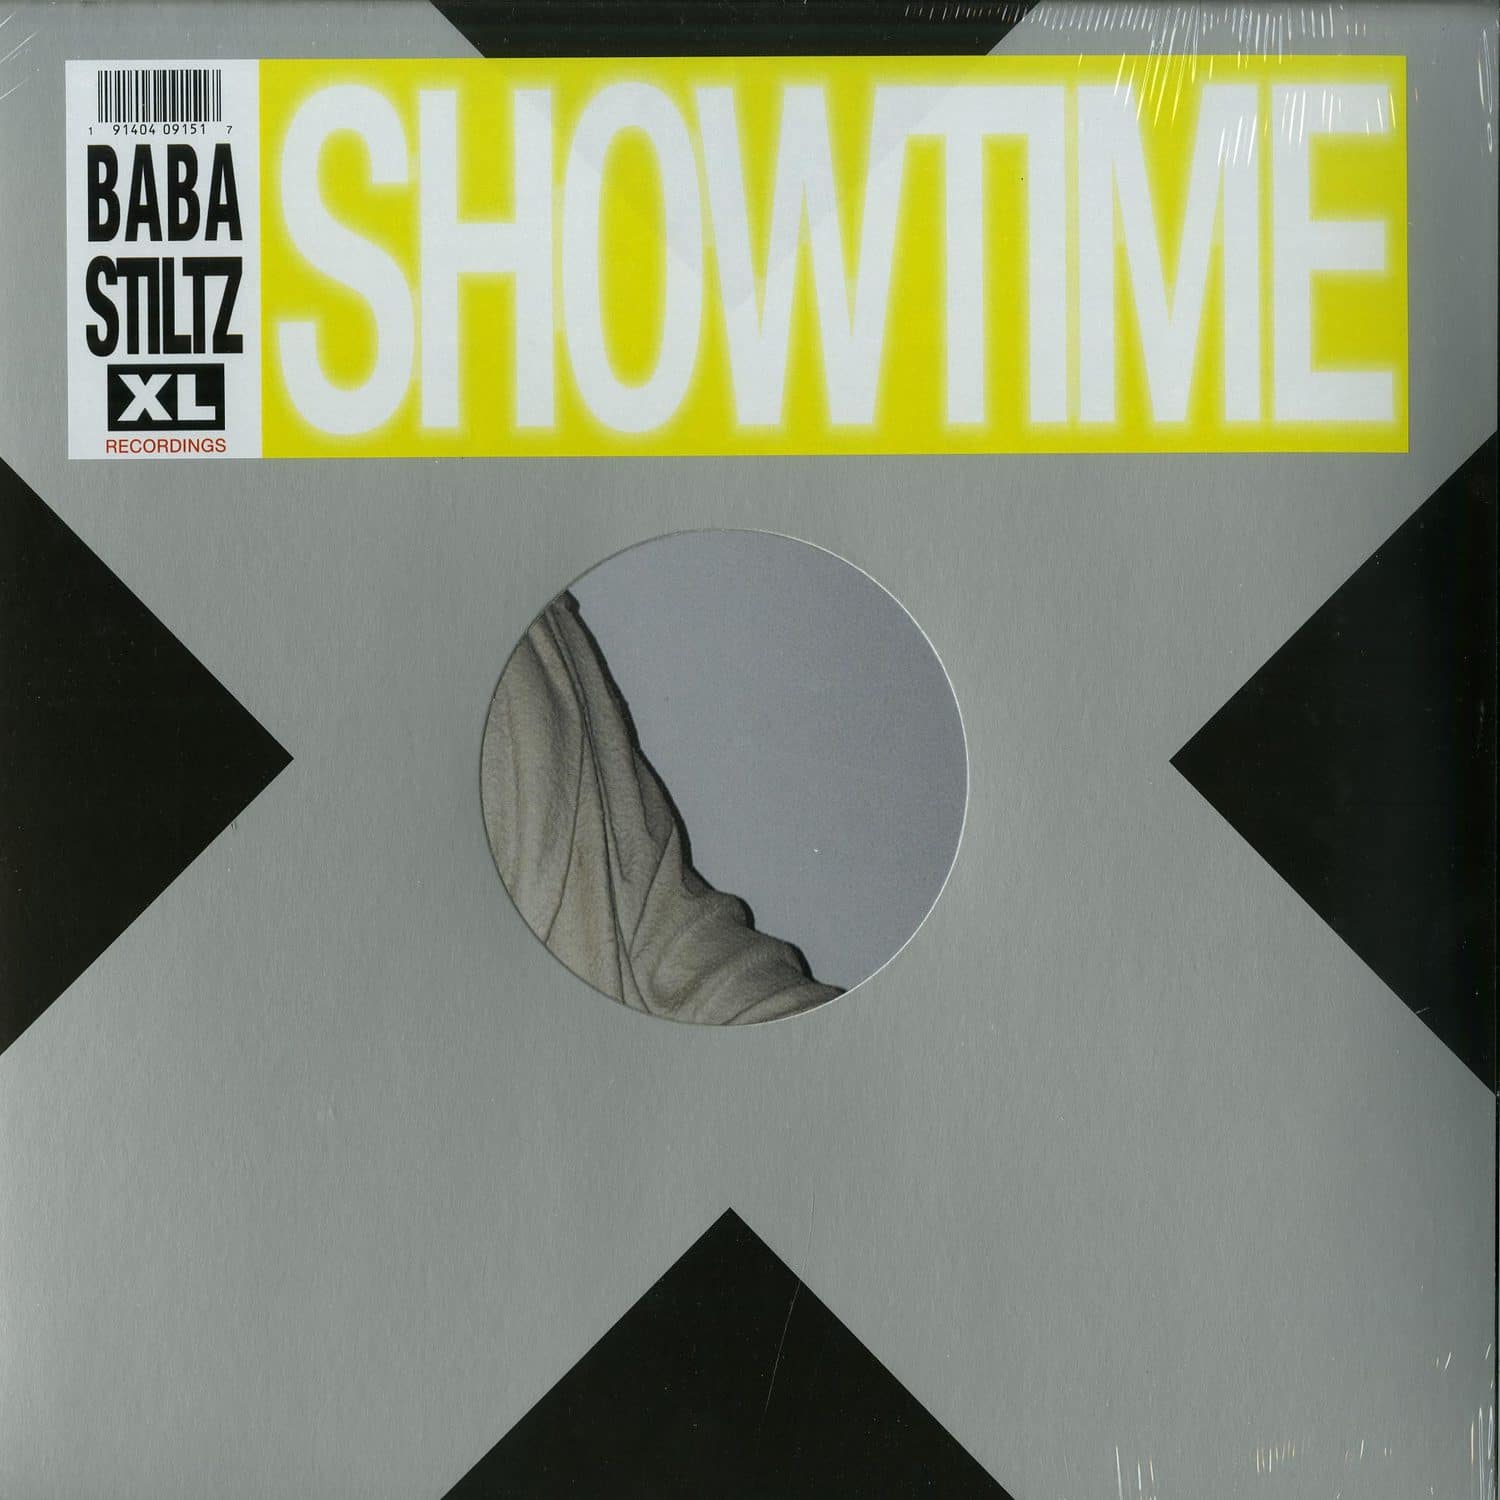 Baba Stiltz - SHOWTIME